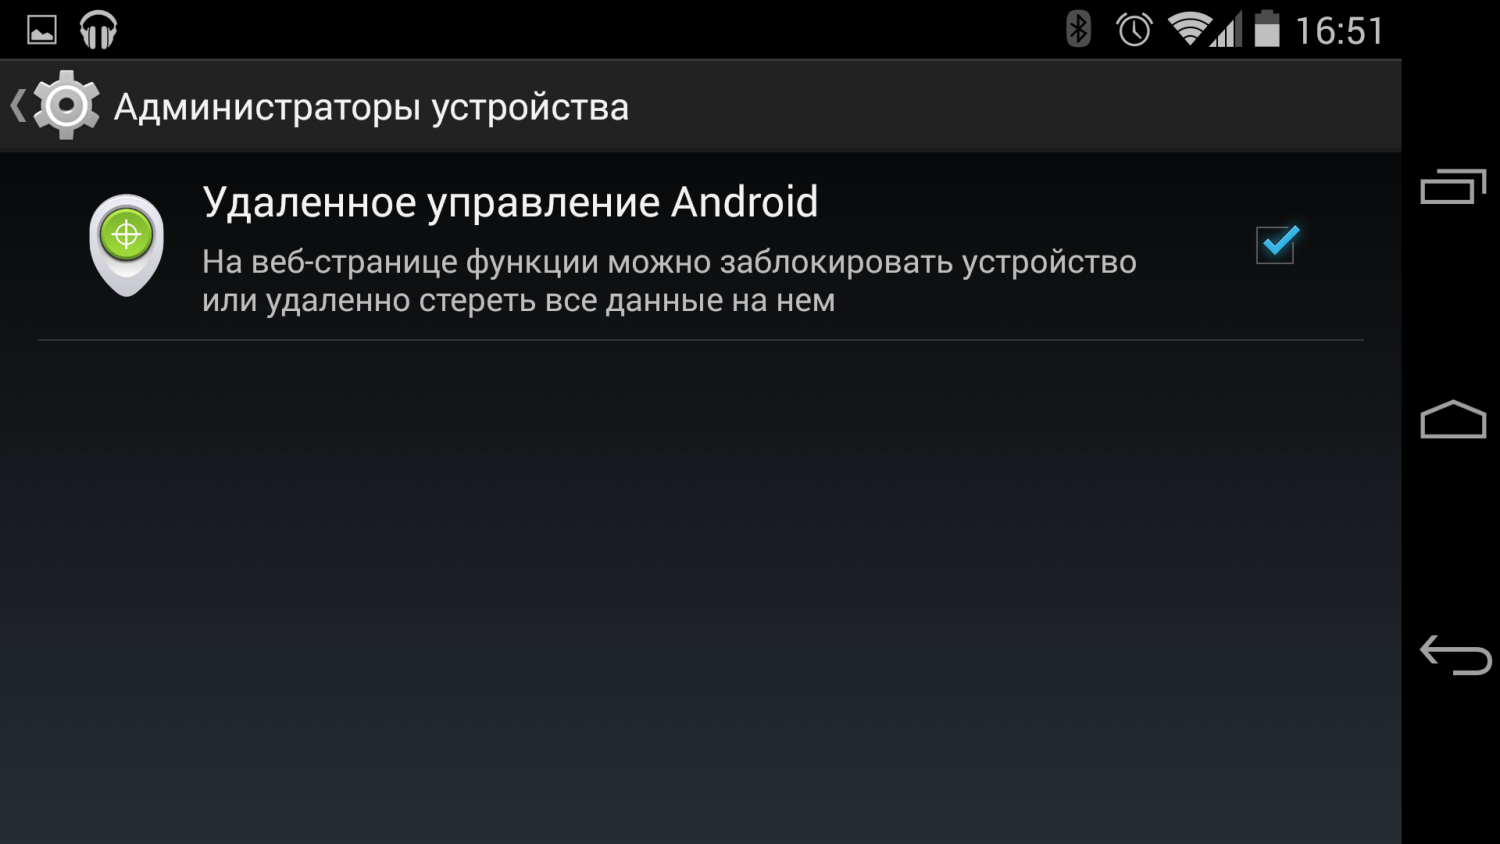 Управление телефоном. Удалённое управление андроид. Удаленное управление Android. Удаленное управление планшетом Android. Управление устройствами андроид.